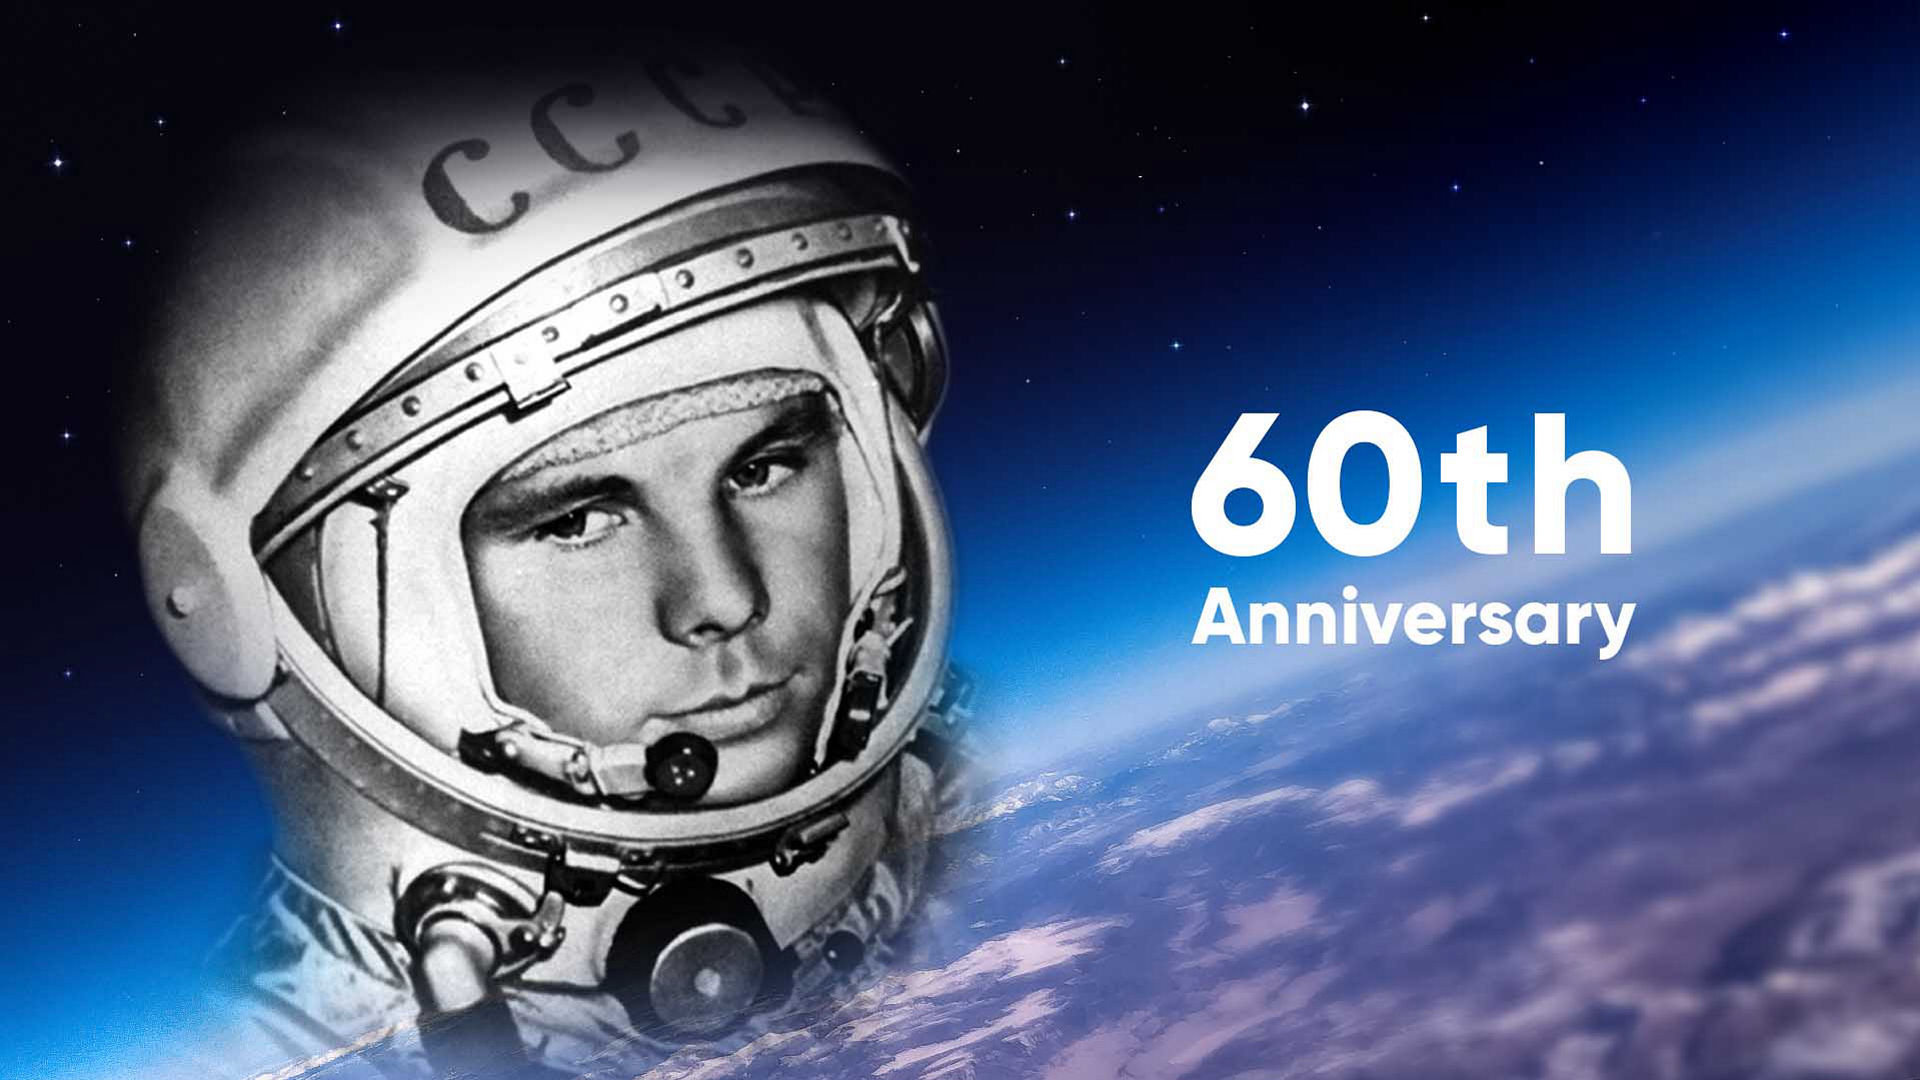 60th Anniversary of Yuri Gagarin's flight